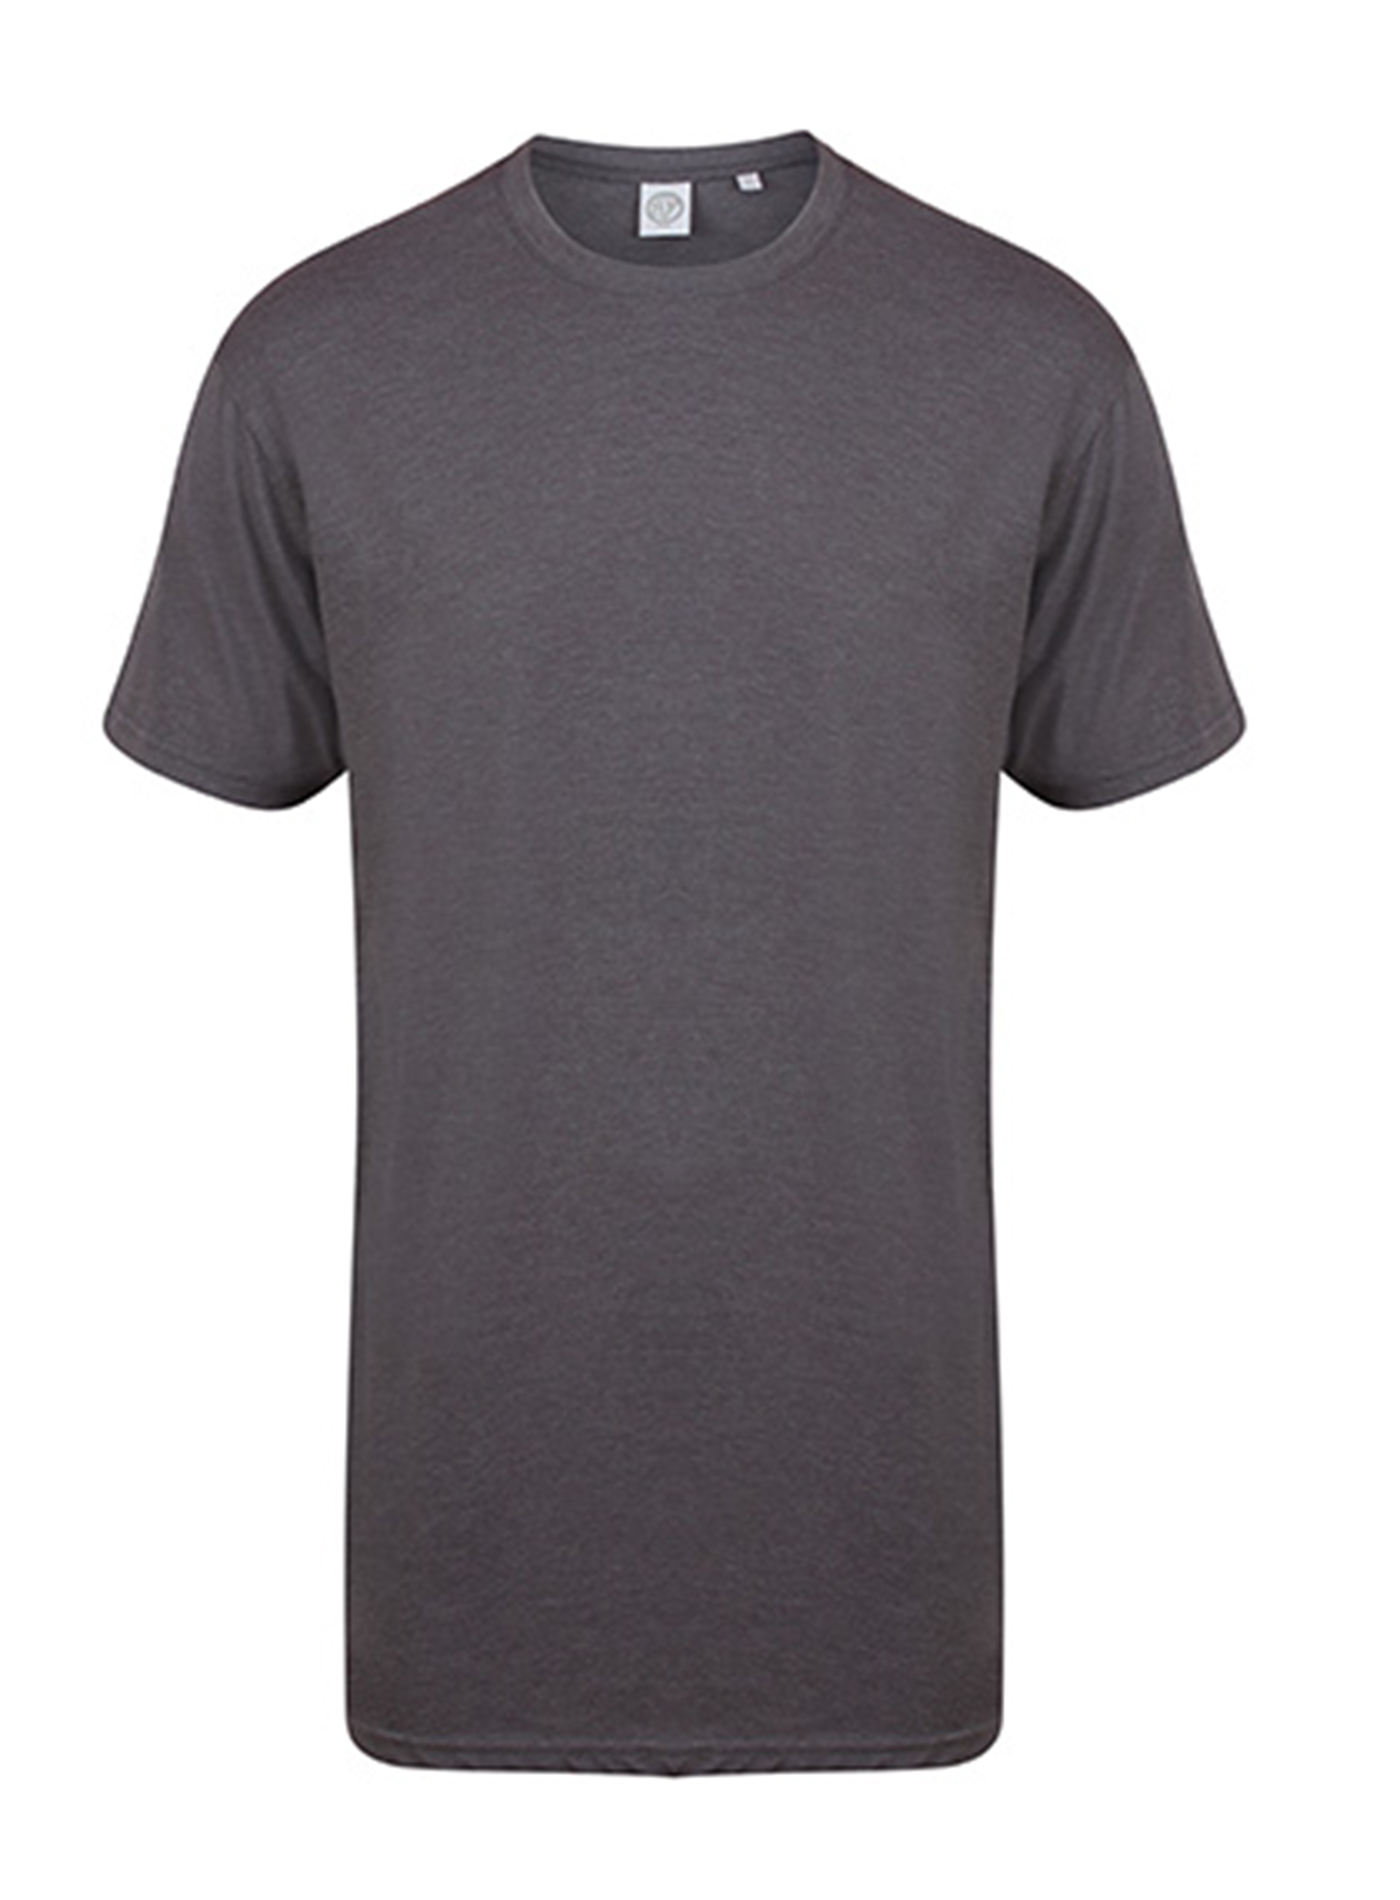 Pánské tričko s prodlouženým zadním dílem Skinnifit Longline T - Camouflage Charcoal L